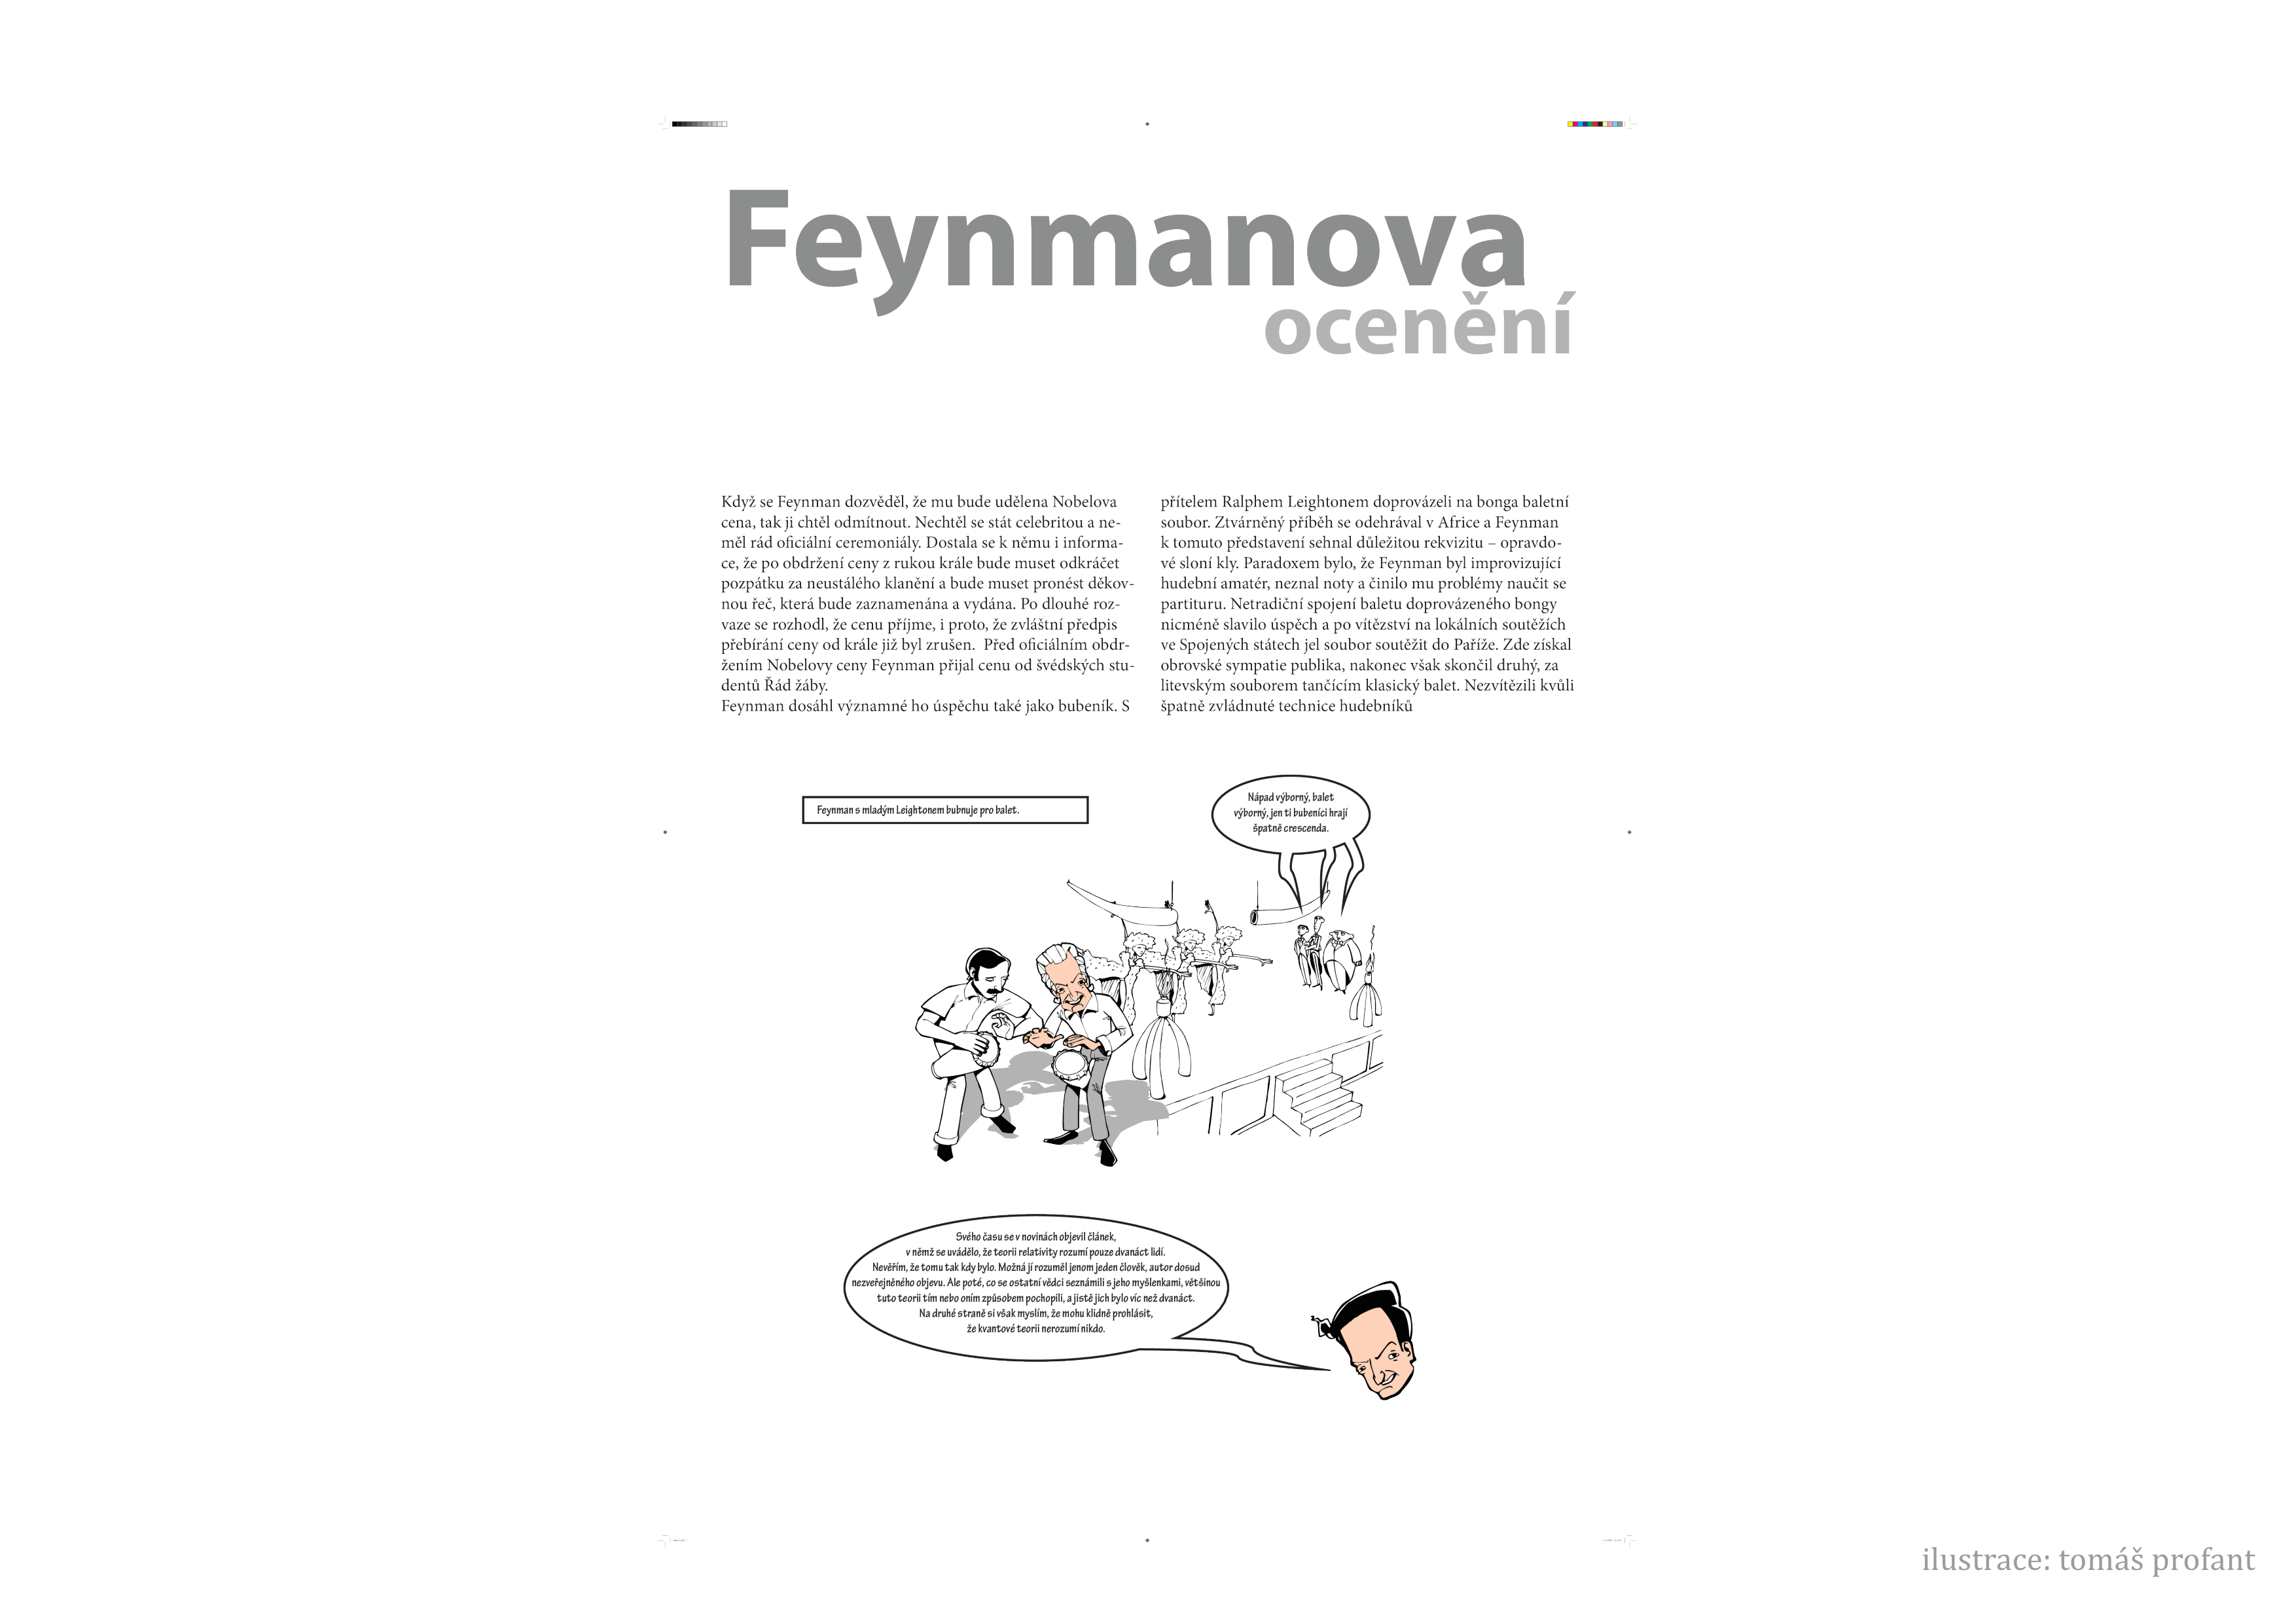 _images/feynman-str%C3%A1nka016.png